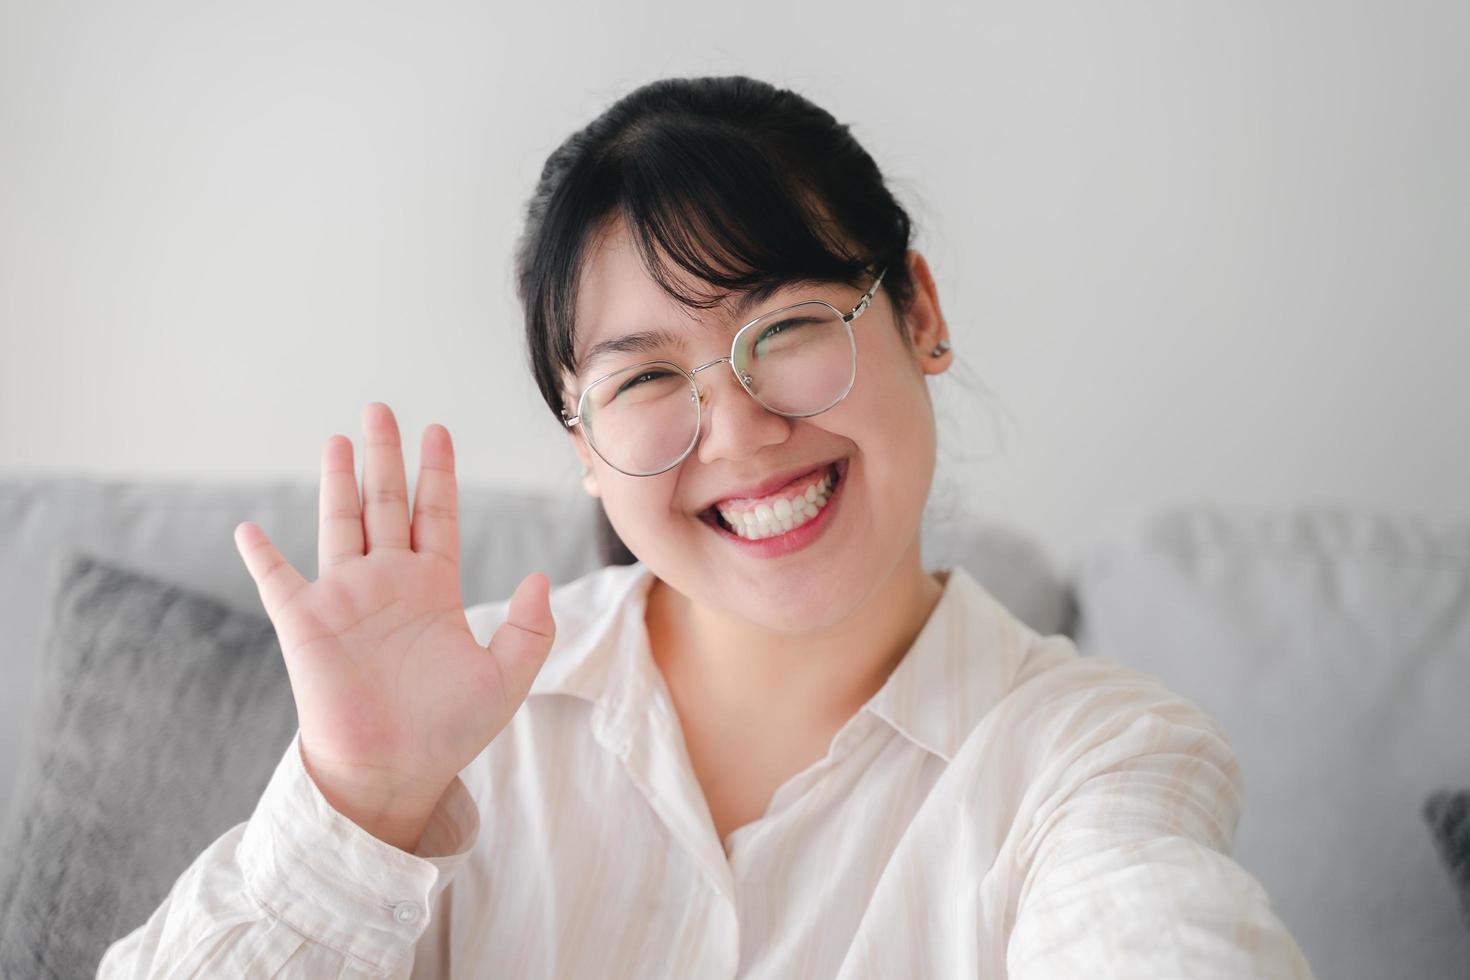 giovane donna asiatica che utilizza lo smartphone per la videoconferenza online con gli amici che agitano la mano facendo un gesto di saluto foto